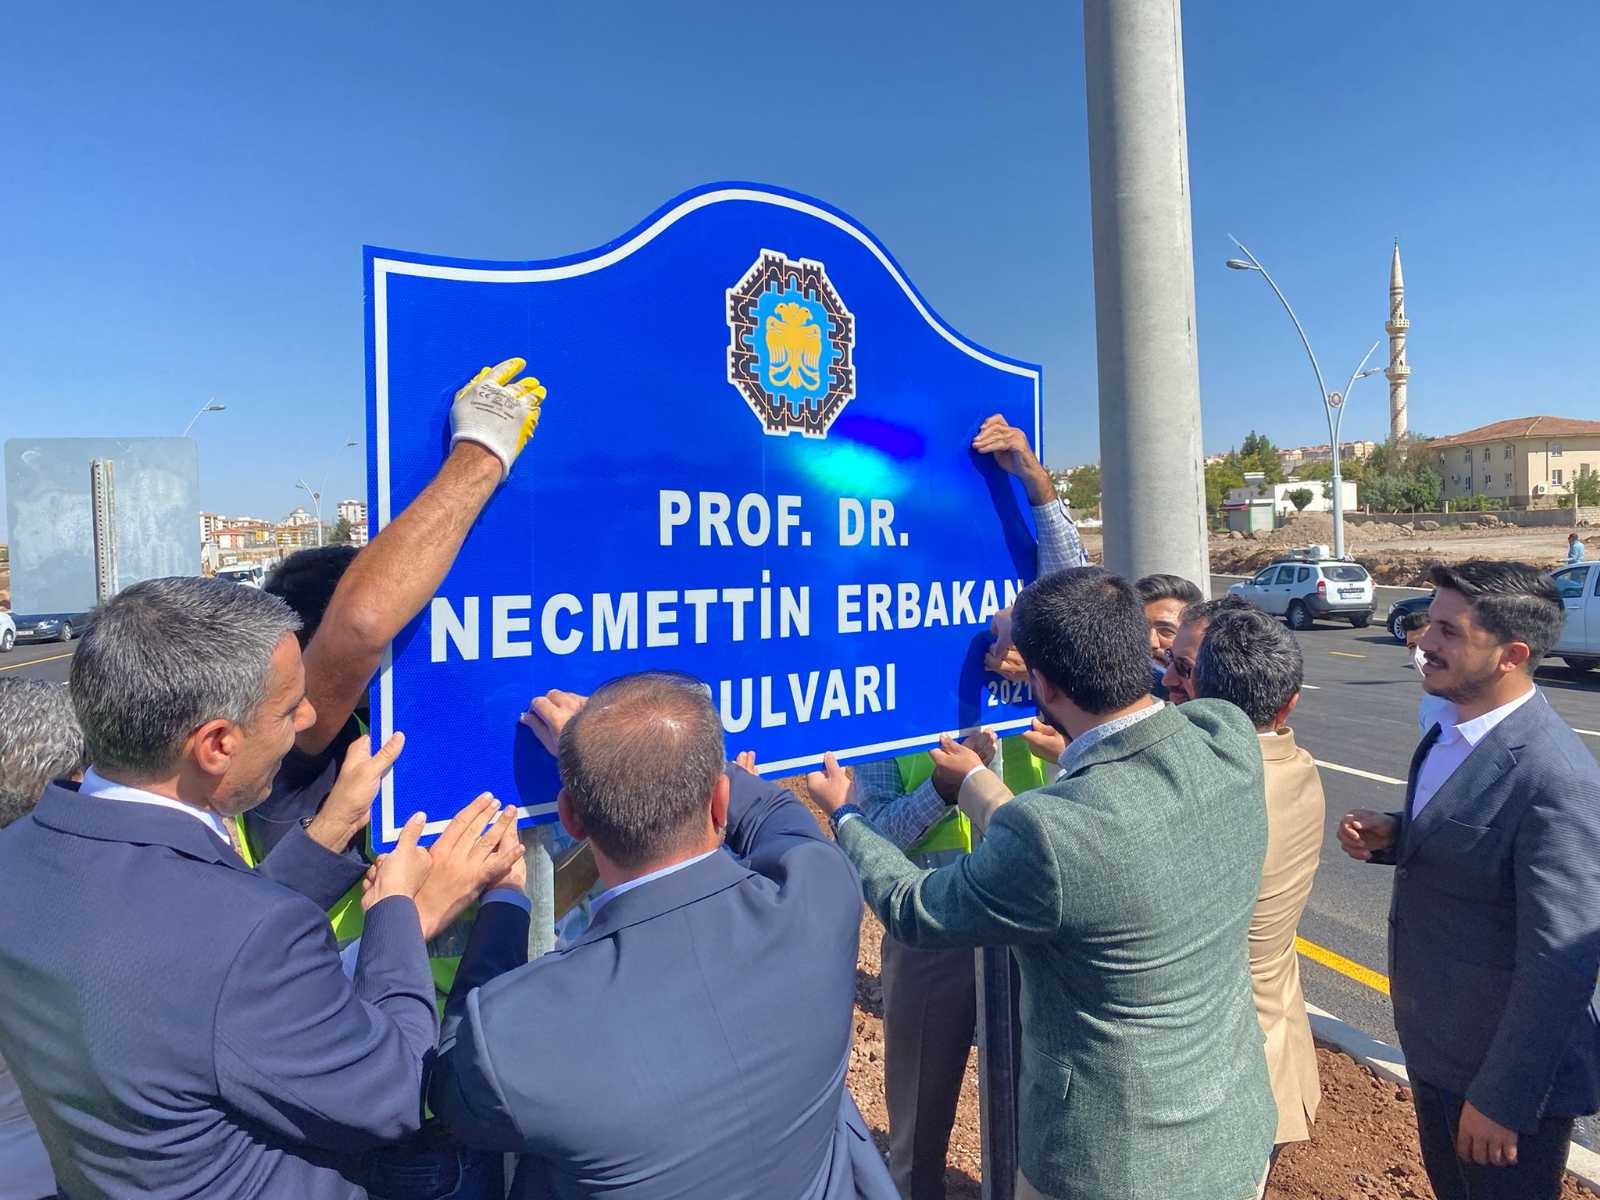 Diyarbakır’da yeni açılan bulvara Prof. Dr. Necmettin Erbakan’ın adı verildi #diyarbakir